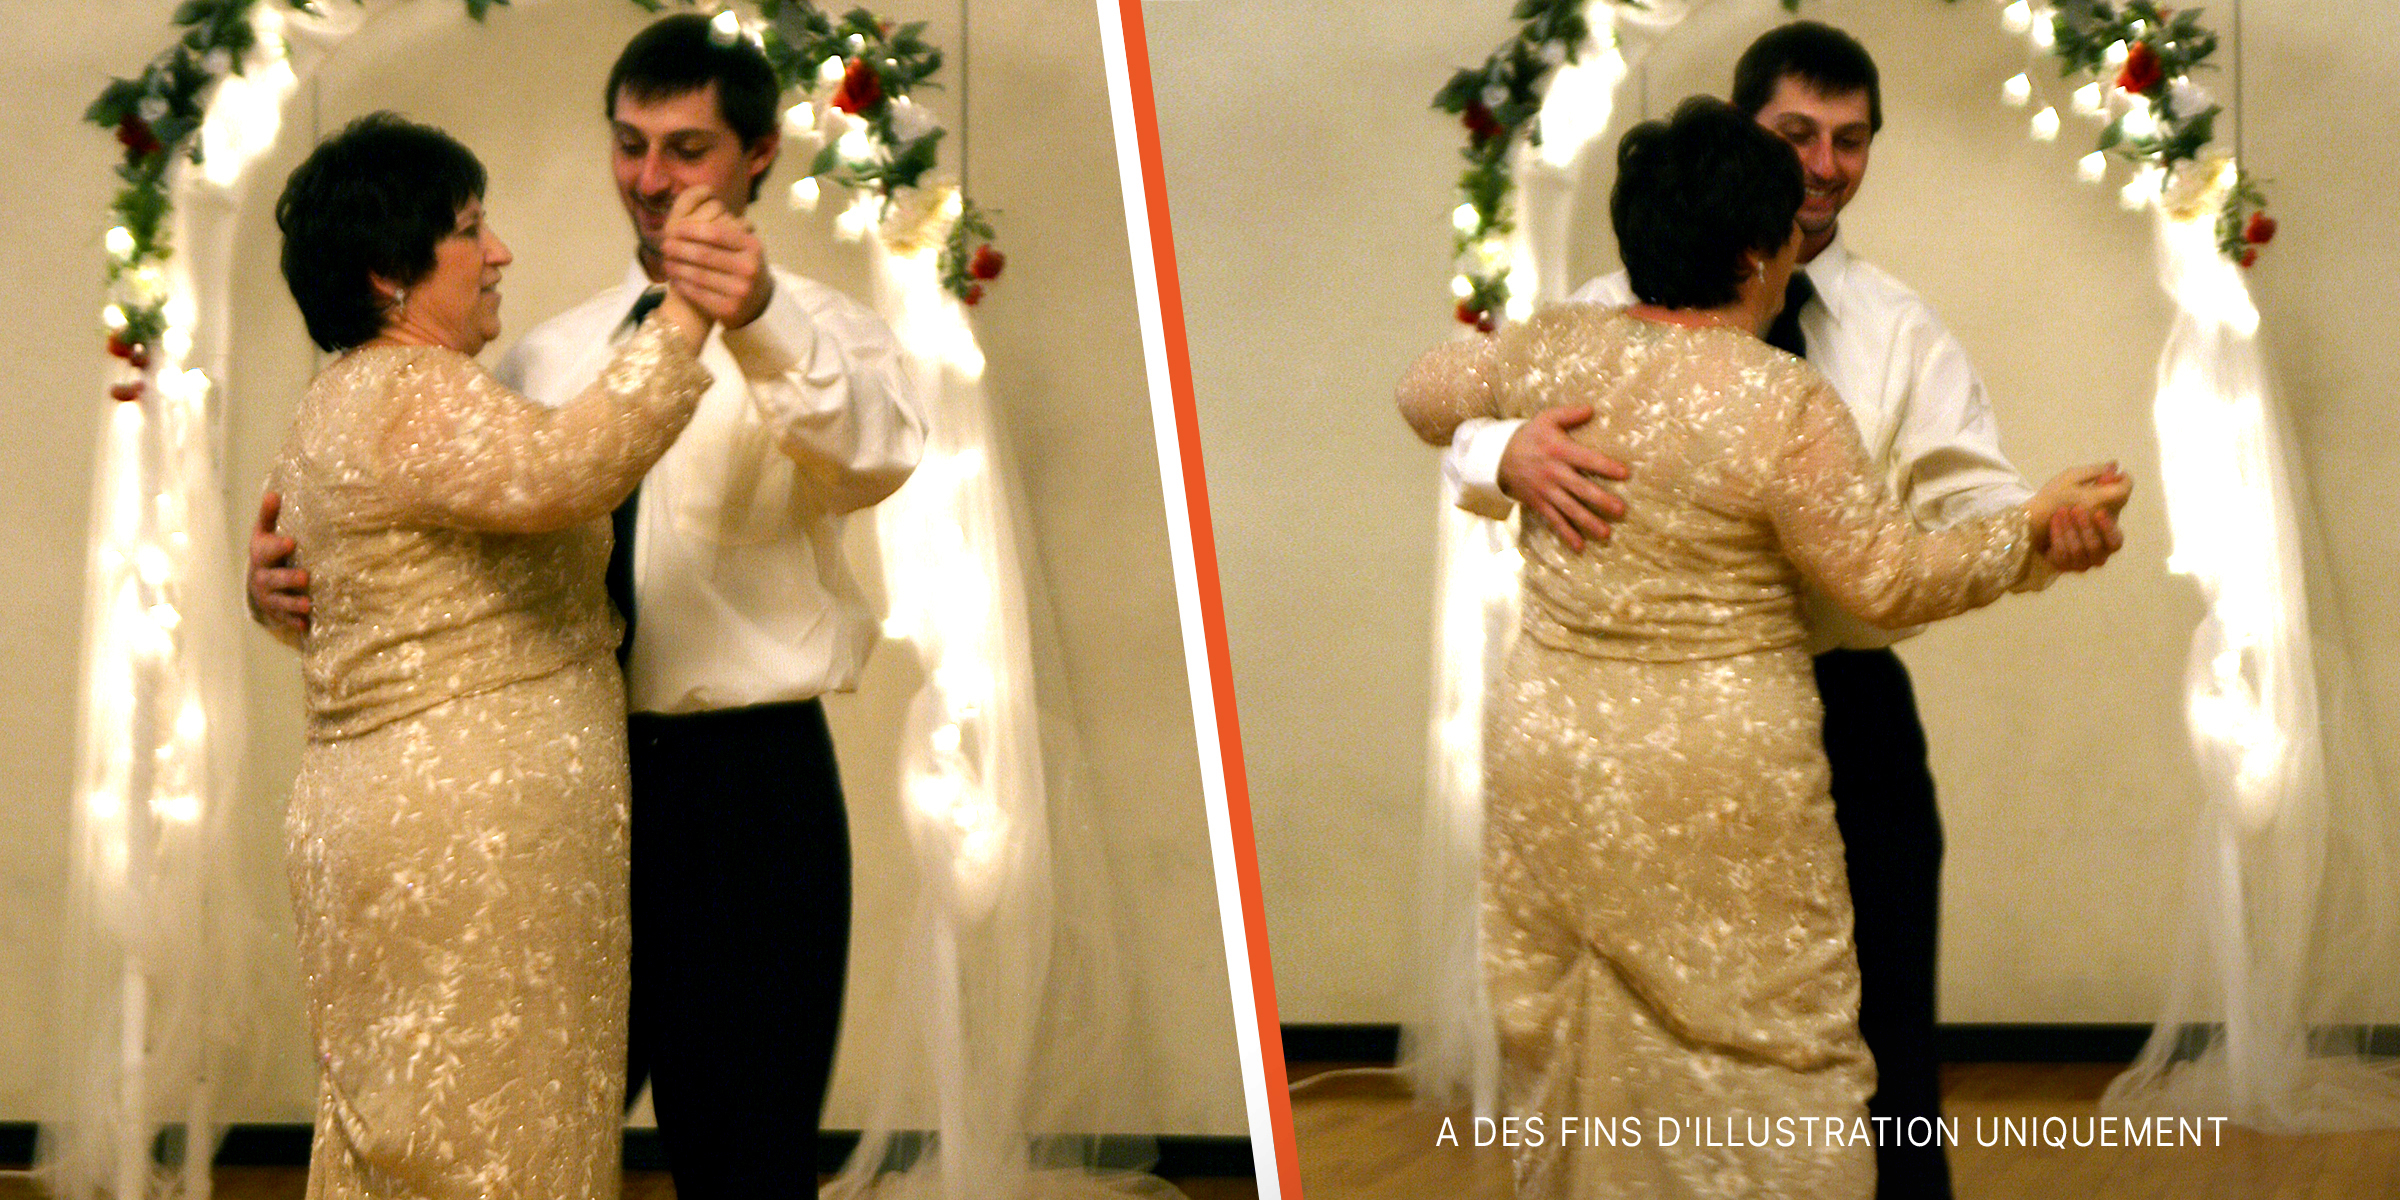 Un fils danse avec sa mère lors de son mariage | Source : Flickr.com/quinn.anya/CC BY-SA 2.0